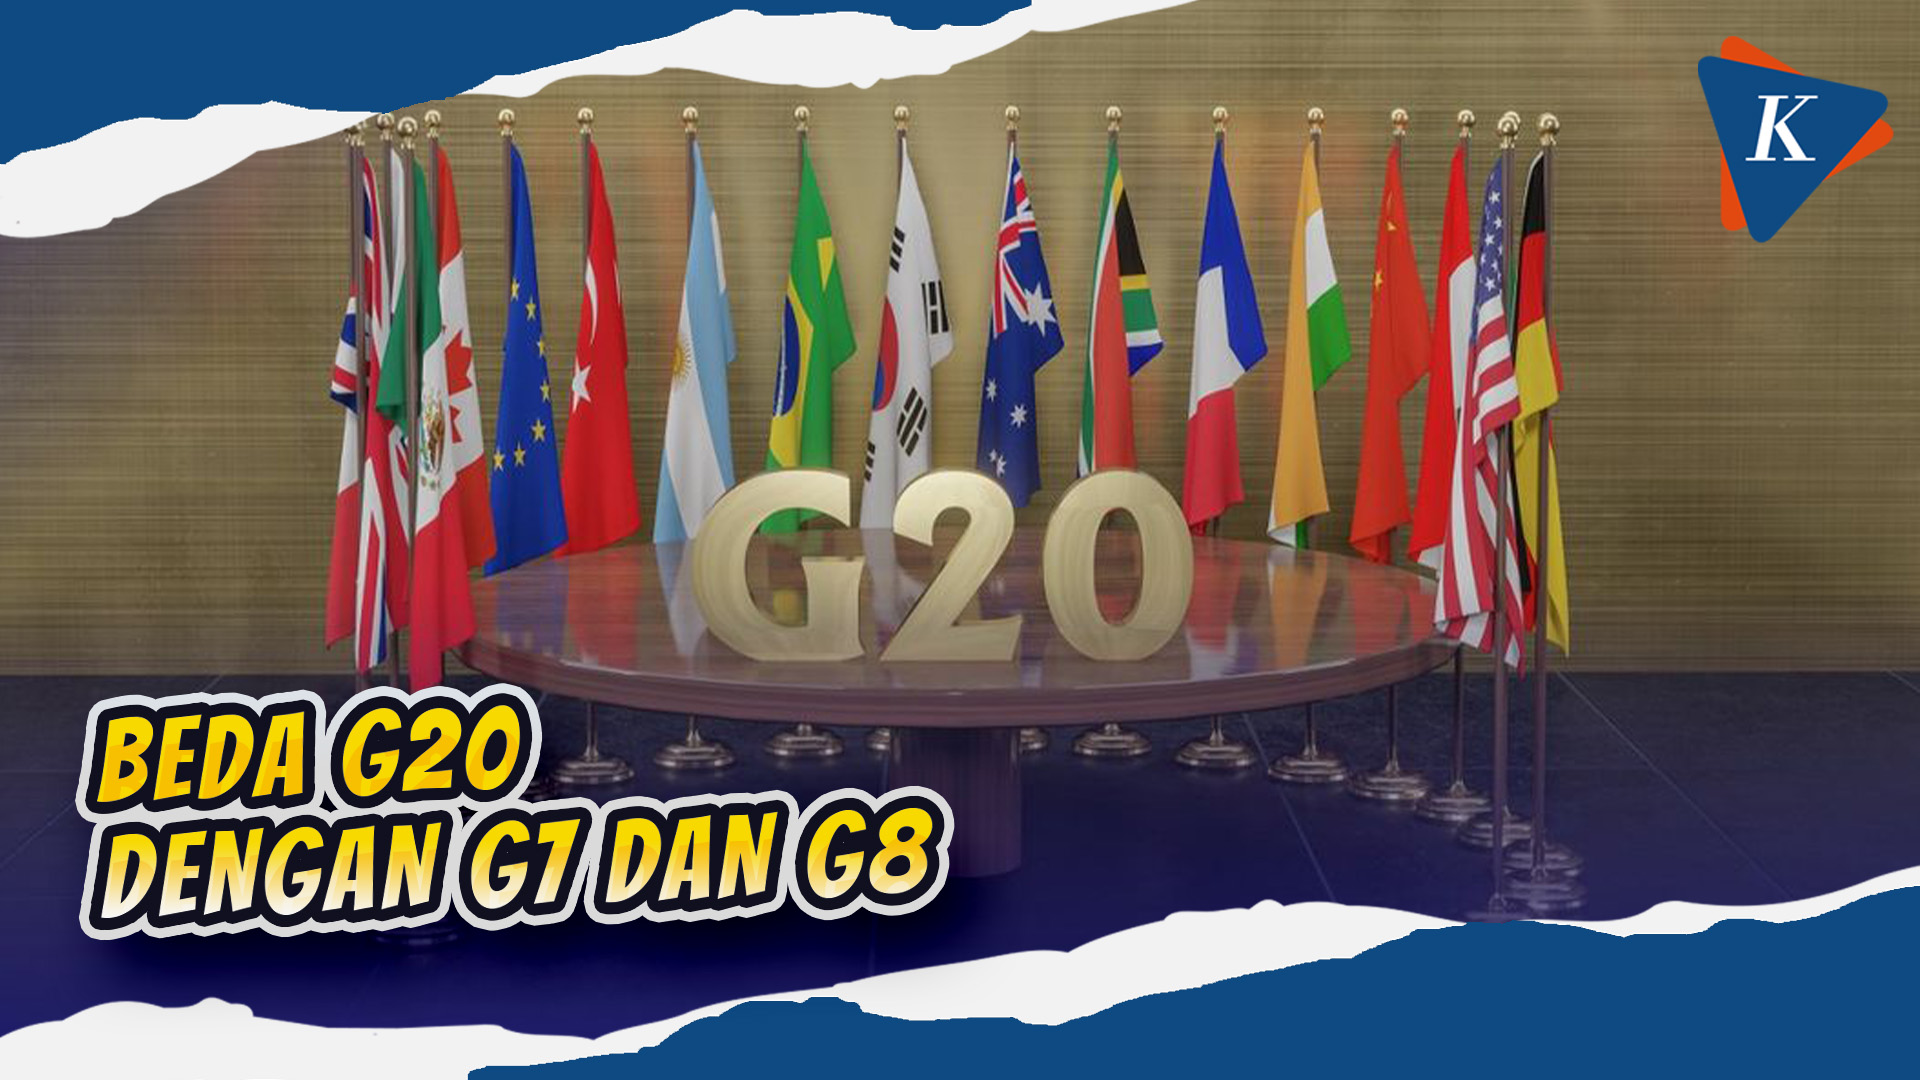 Mengenal G20 serta Bedanya dengan G7 dan G8